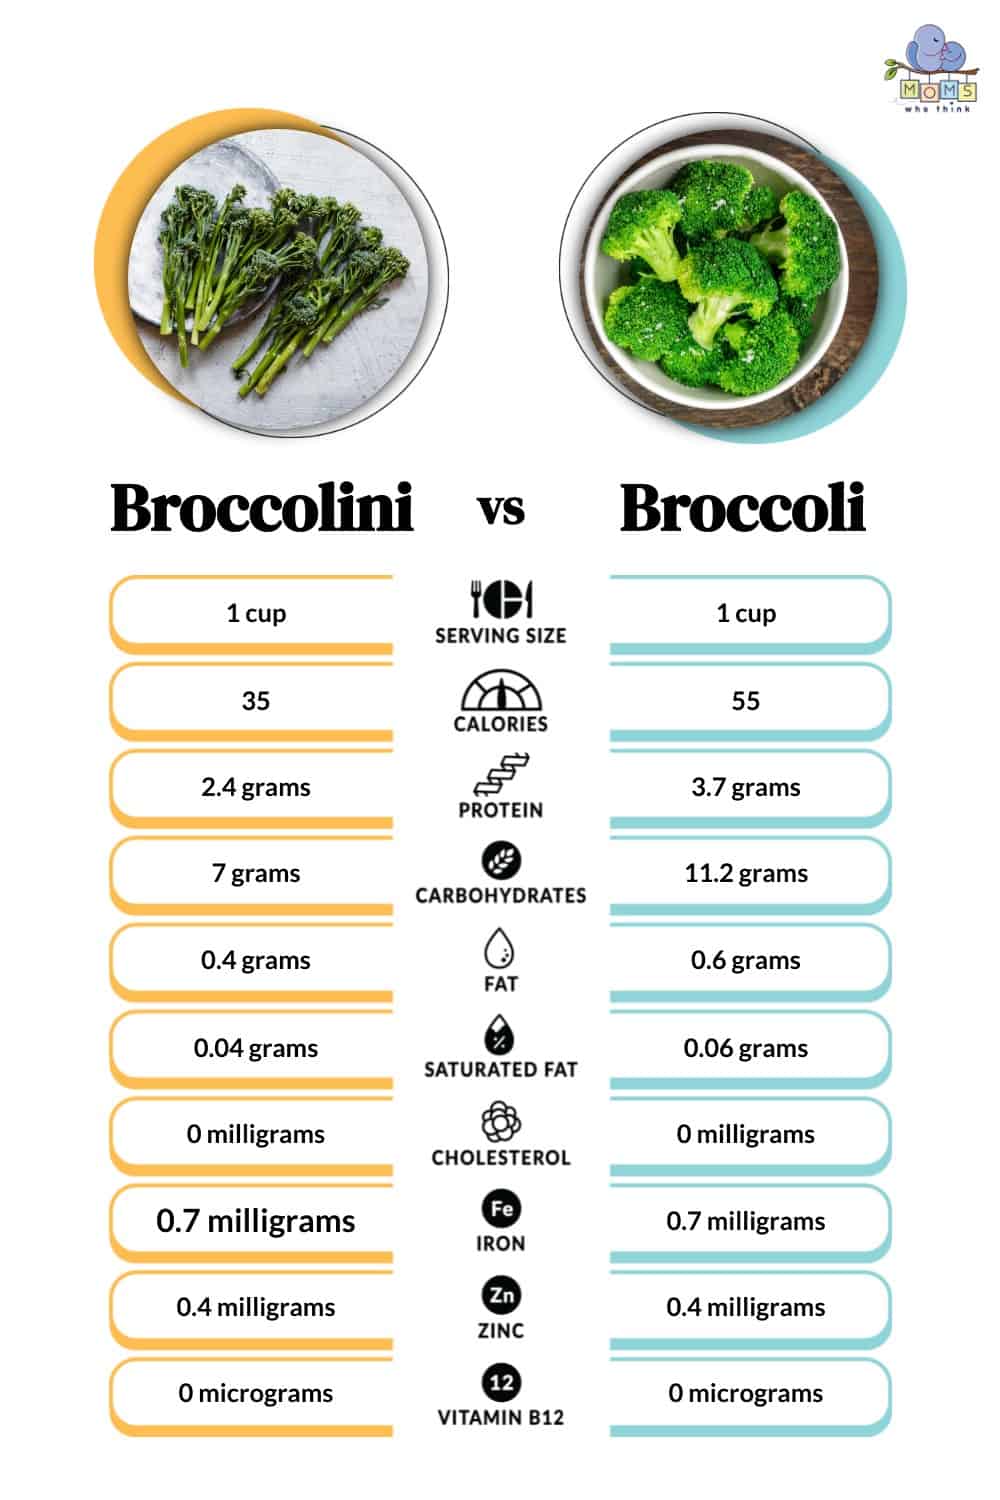 Broccolini vs Broccoli Nutritional Facts